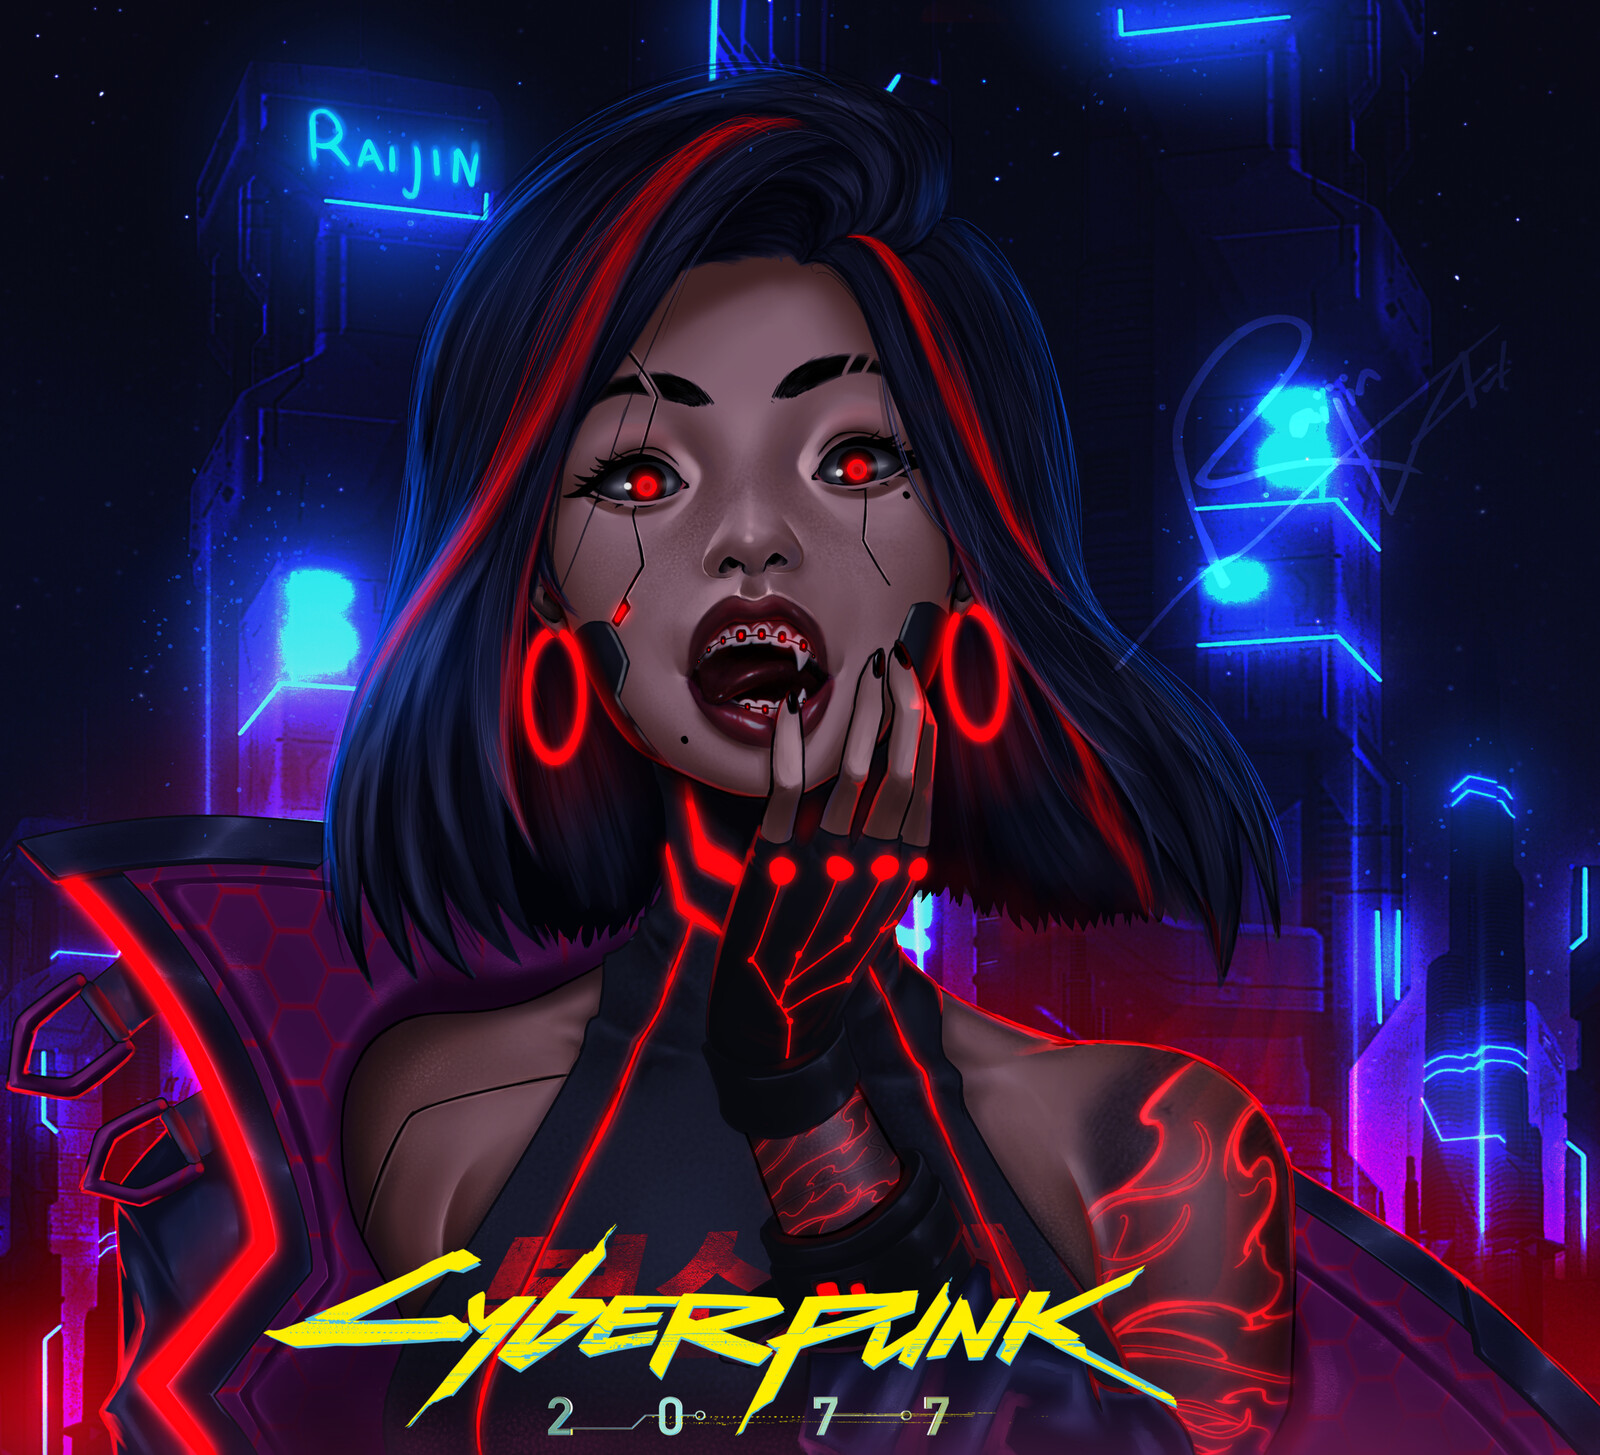 Raijin Art - Cyberpunk Girl - Red